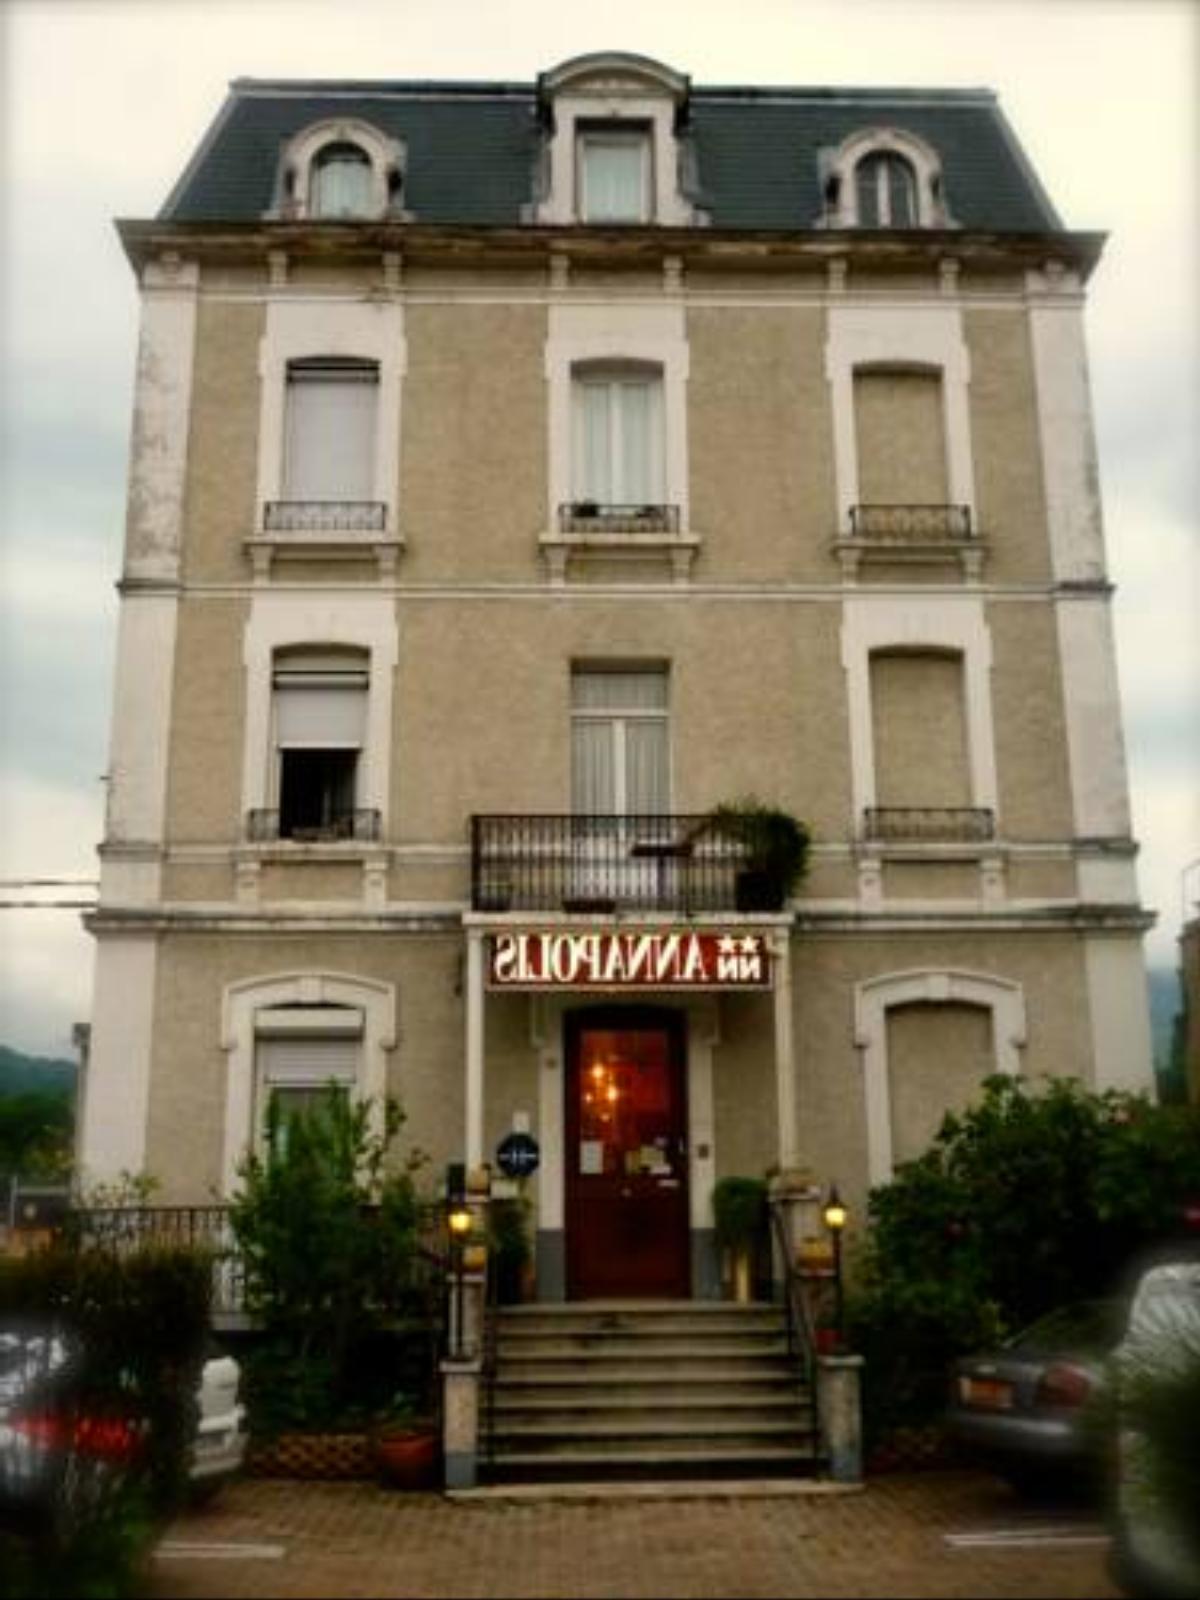 Annapolis Hotel Aix-les-Bains France